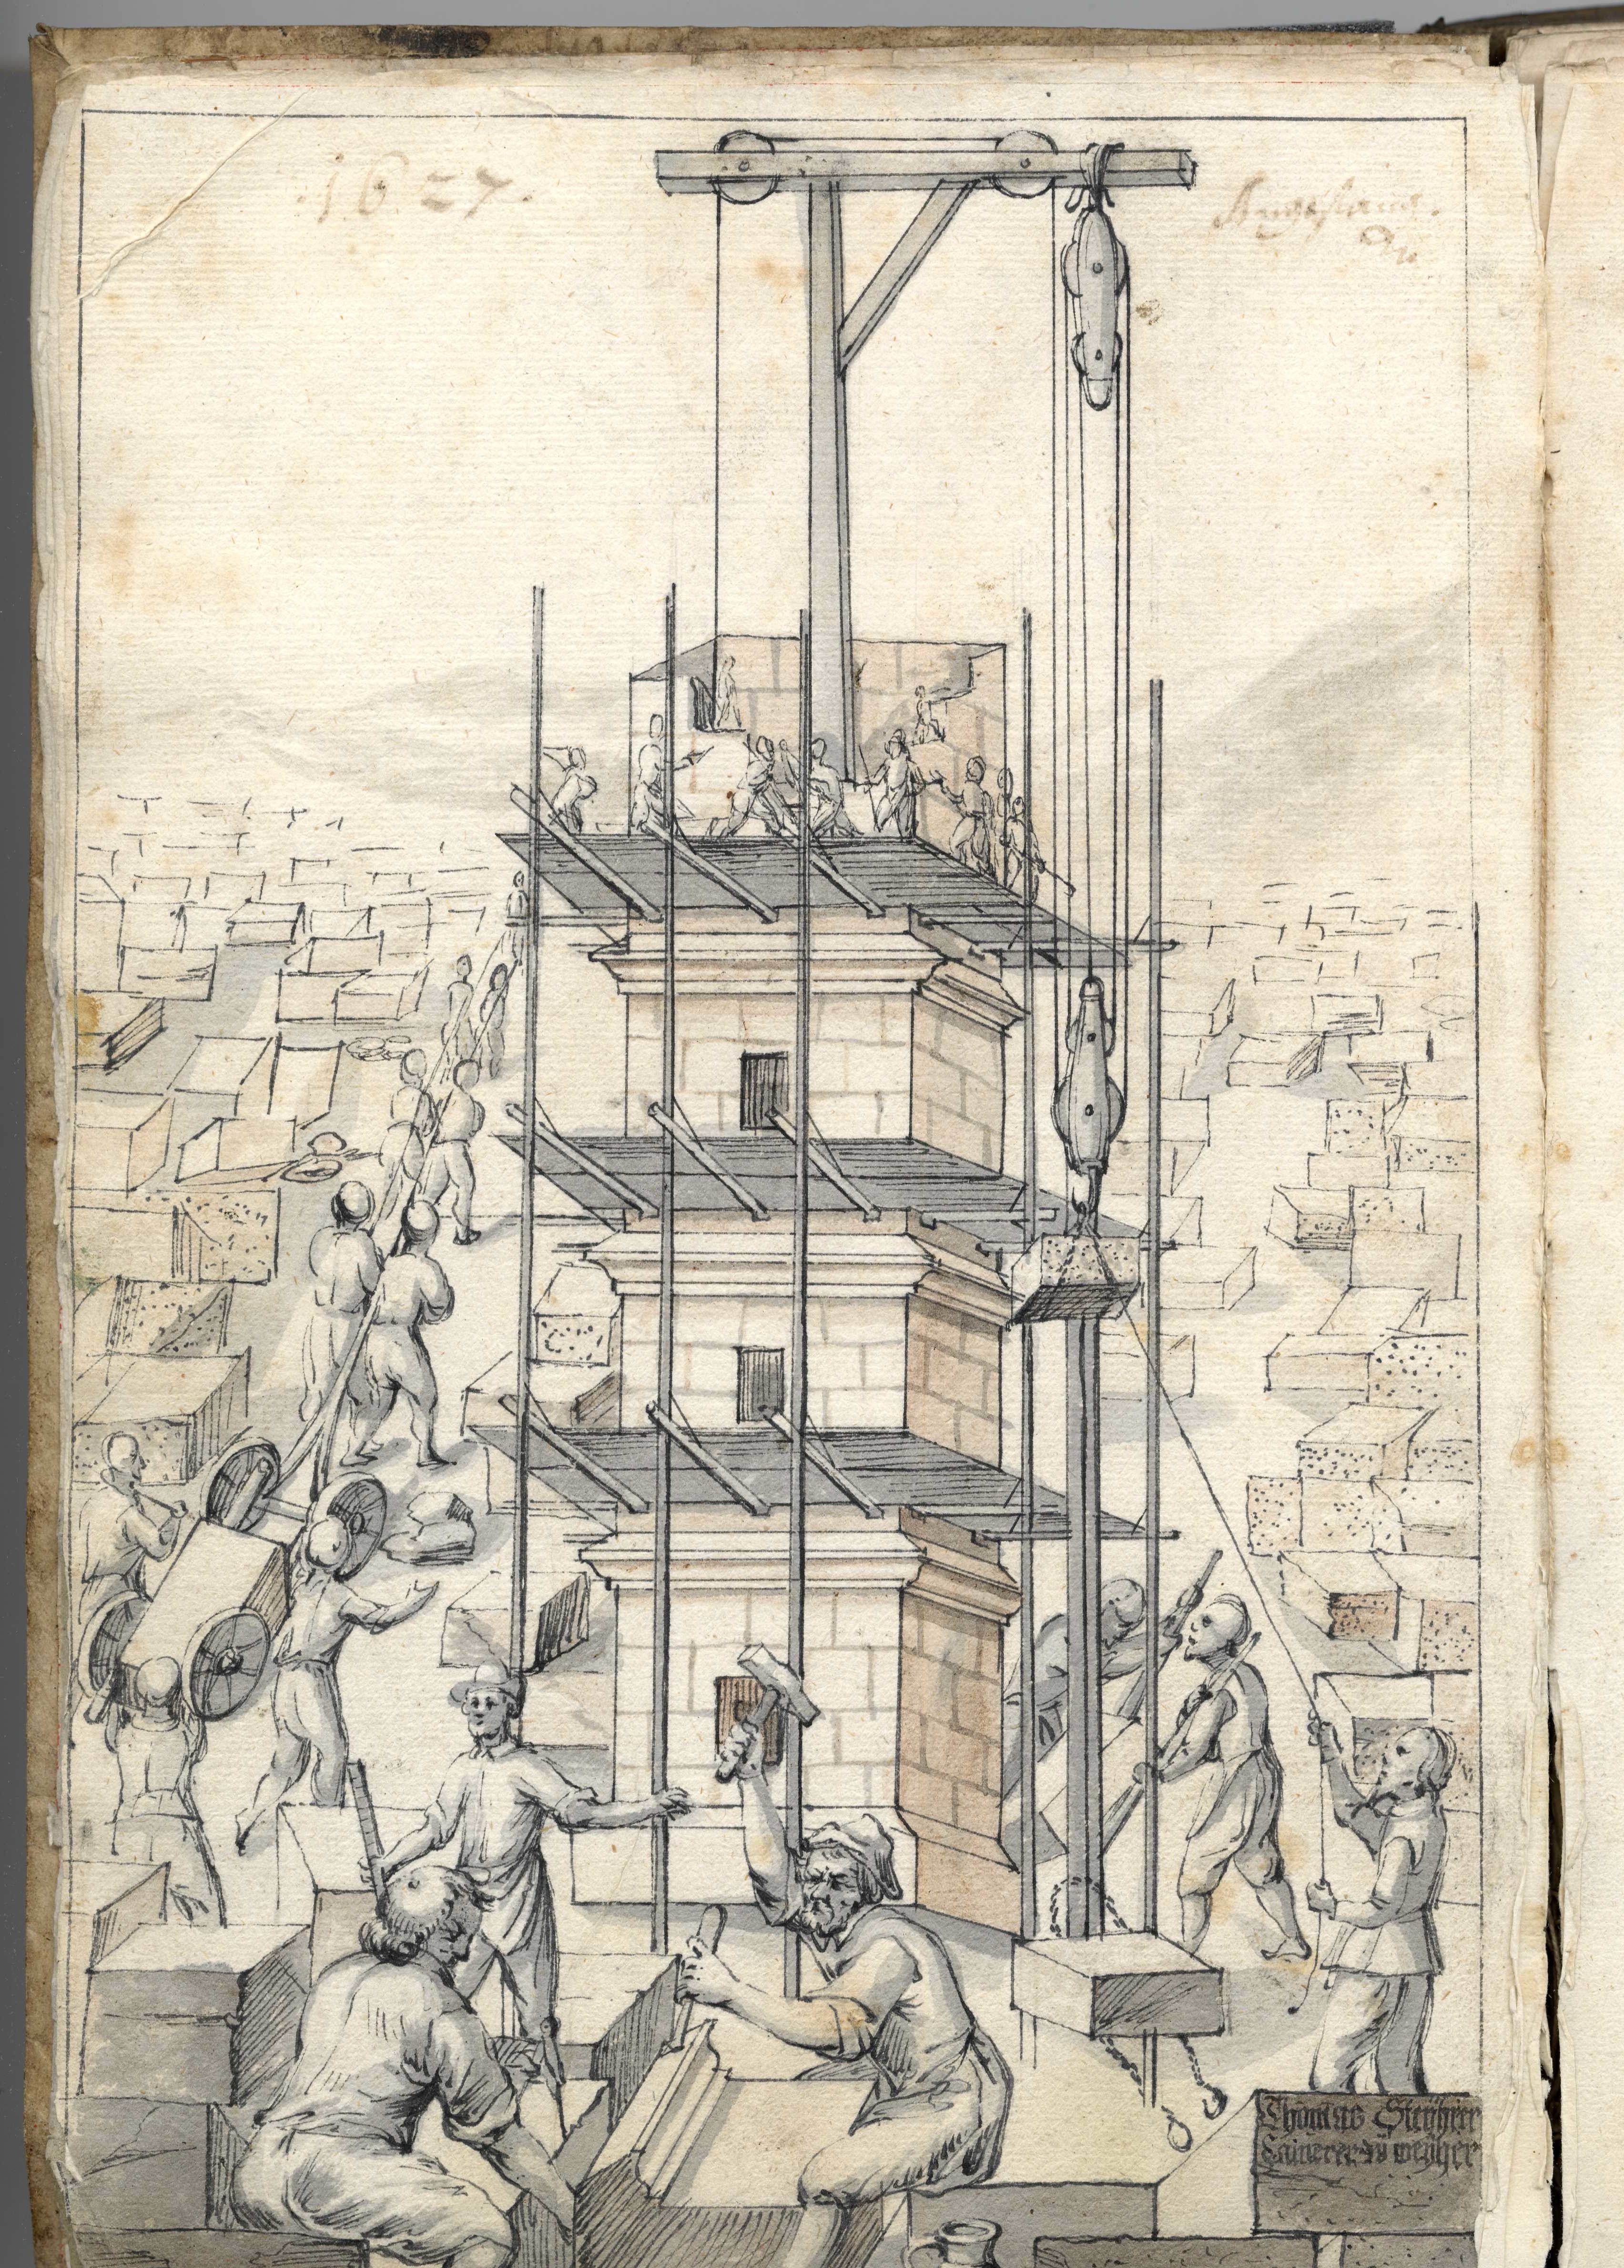 Nachweis des Titelbilds: Weyarner Baubuch, © Archiv des Erzbistums München und Freising, KB 149 fol. 6v